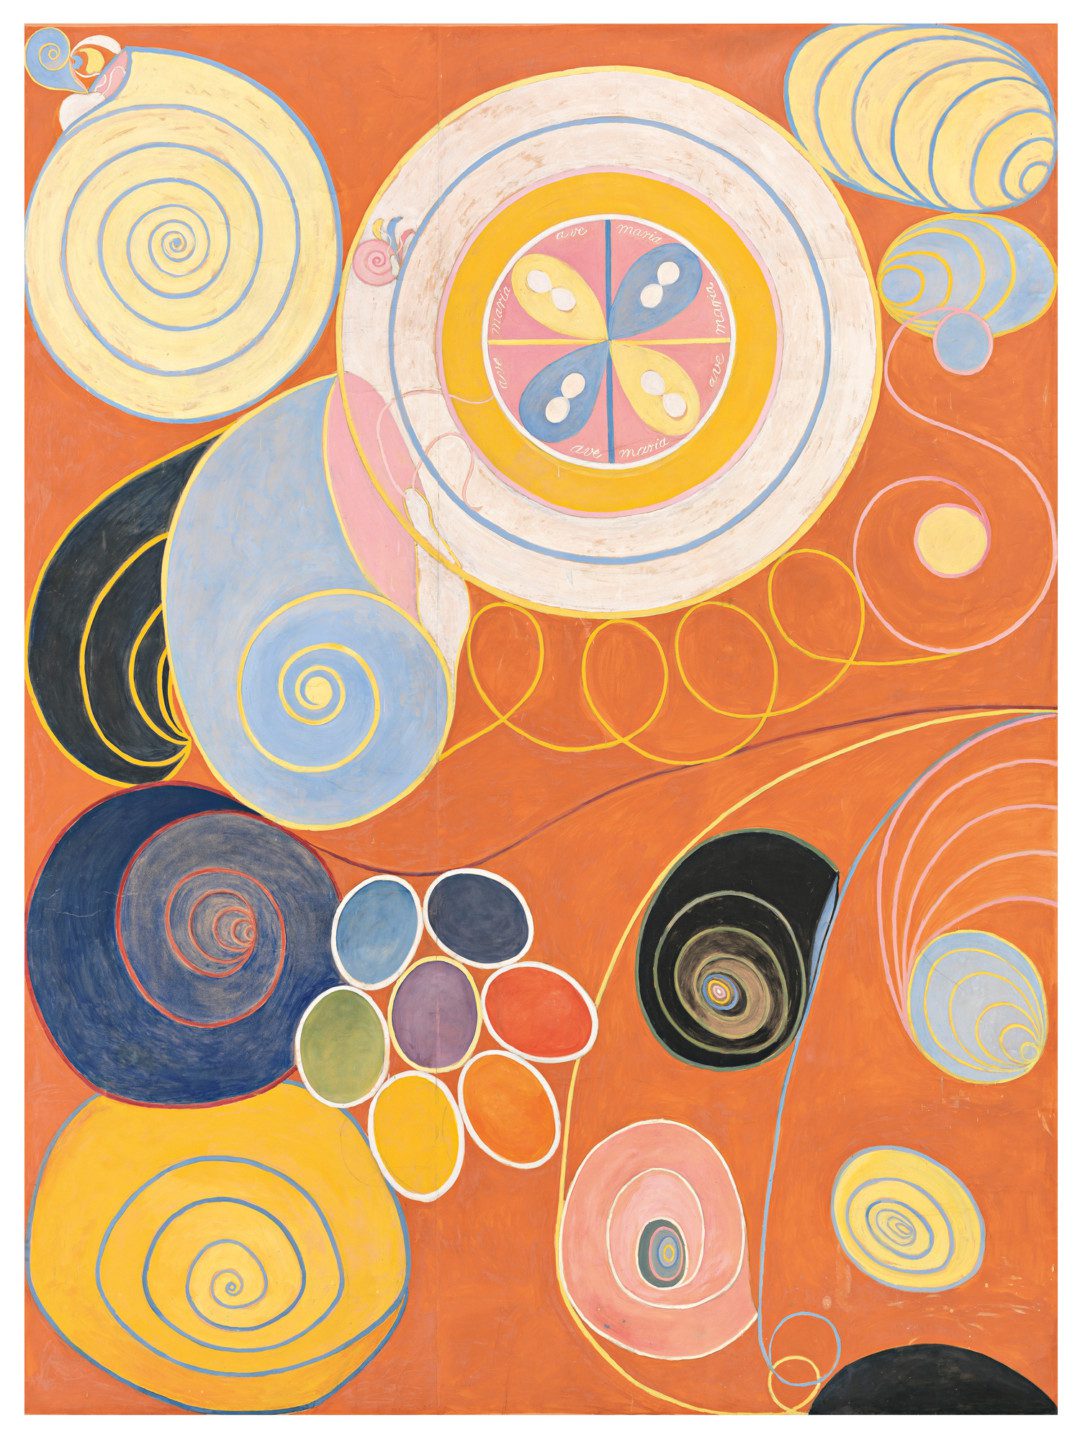 Cirklar och rundlar i färger som grönt, lila, blått rött och gult mot orange bakgrund